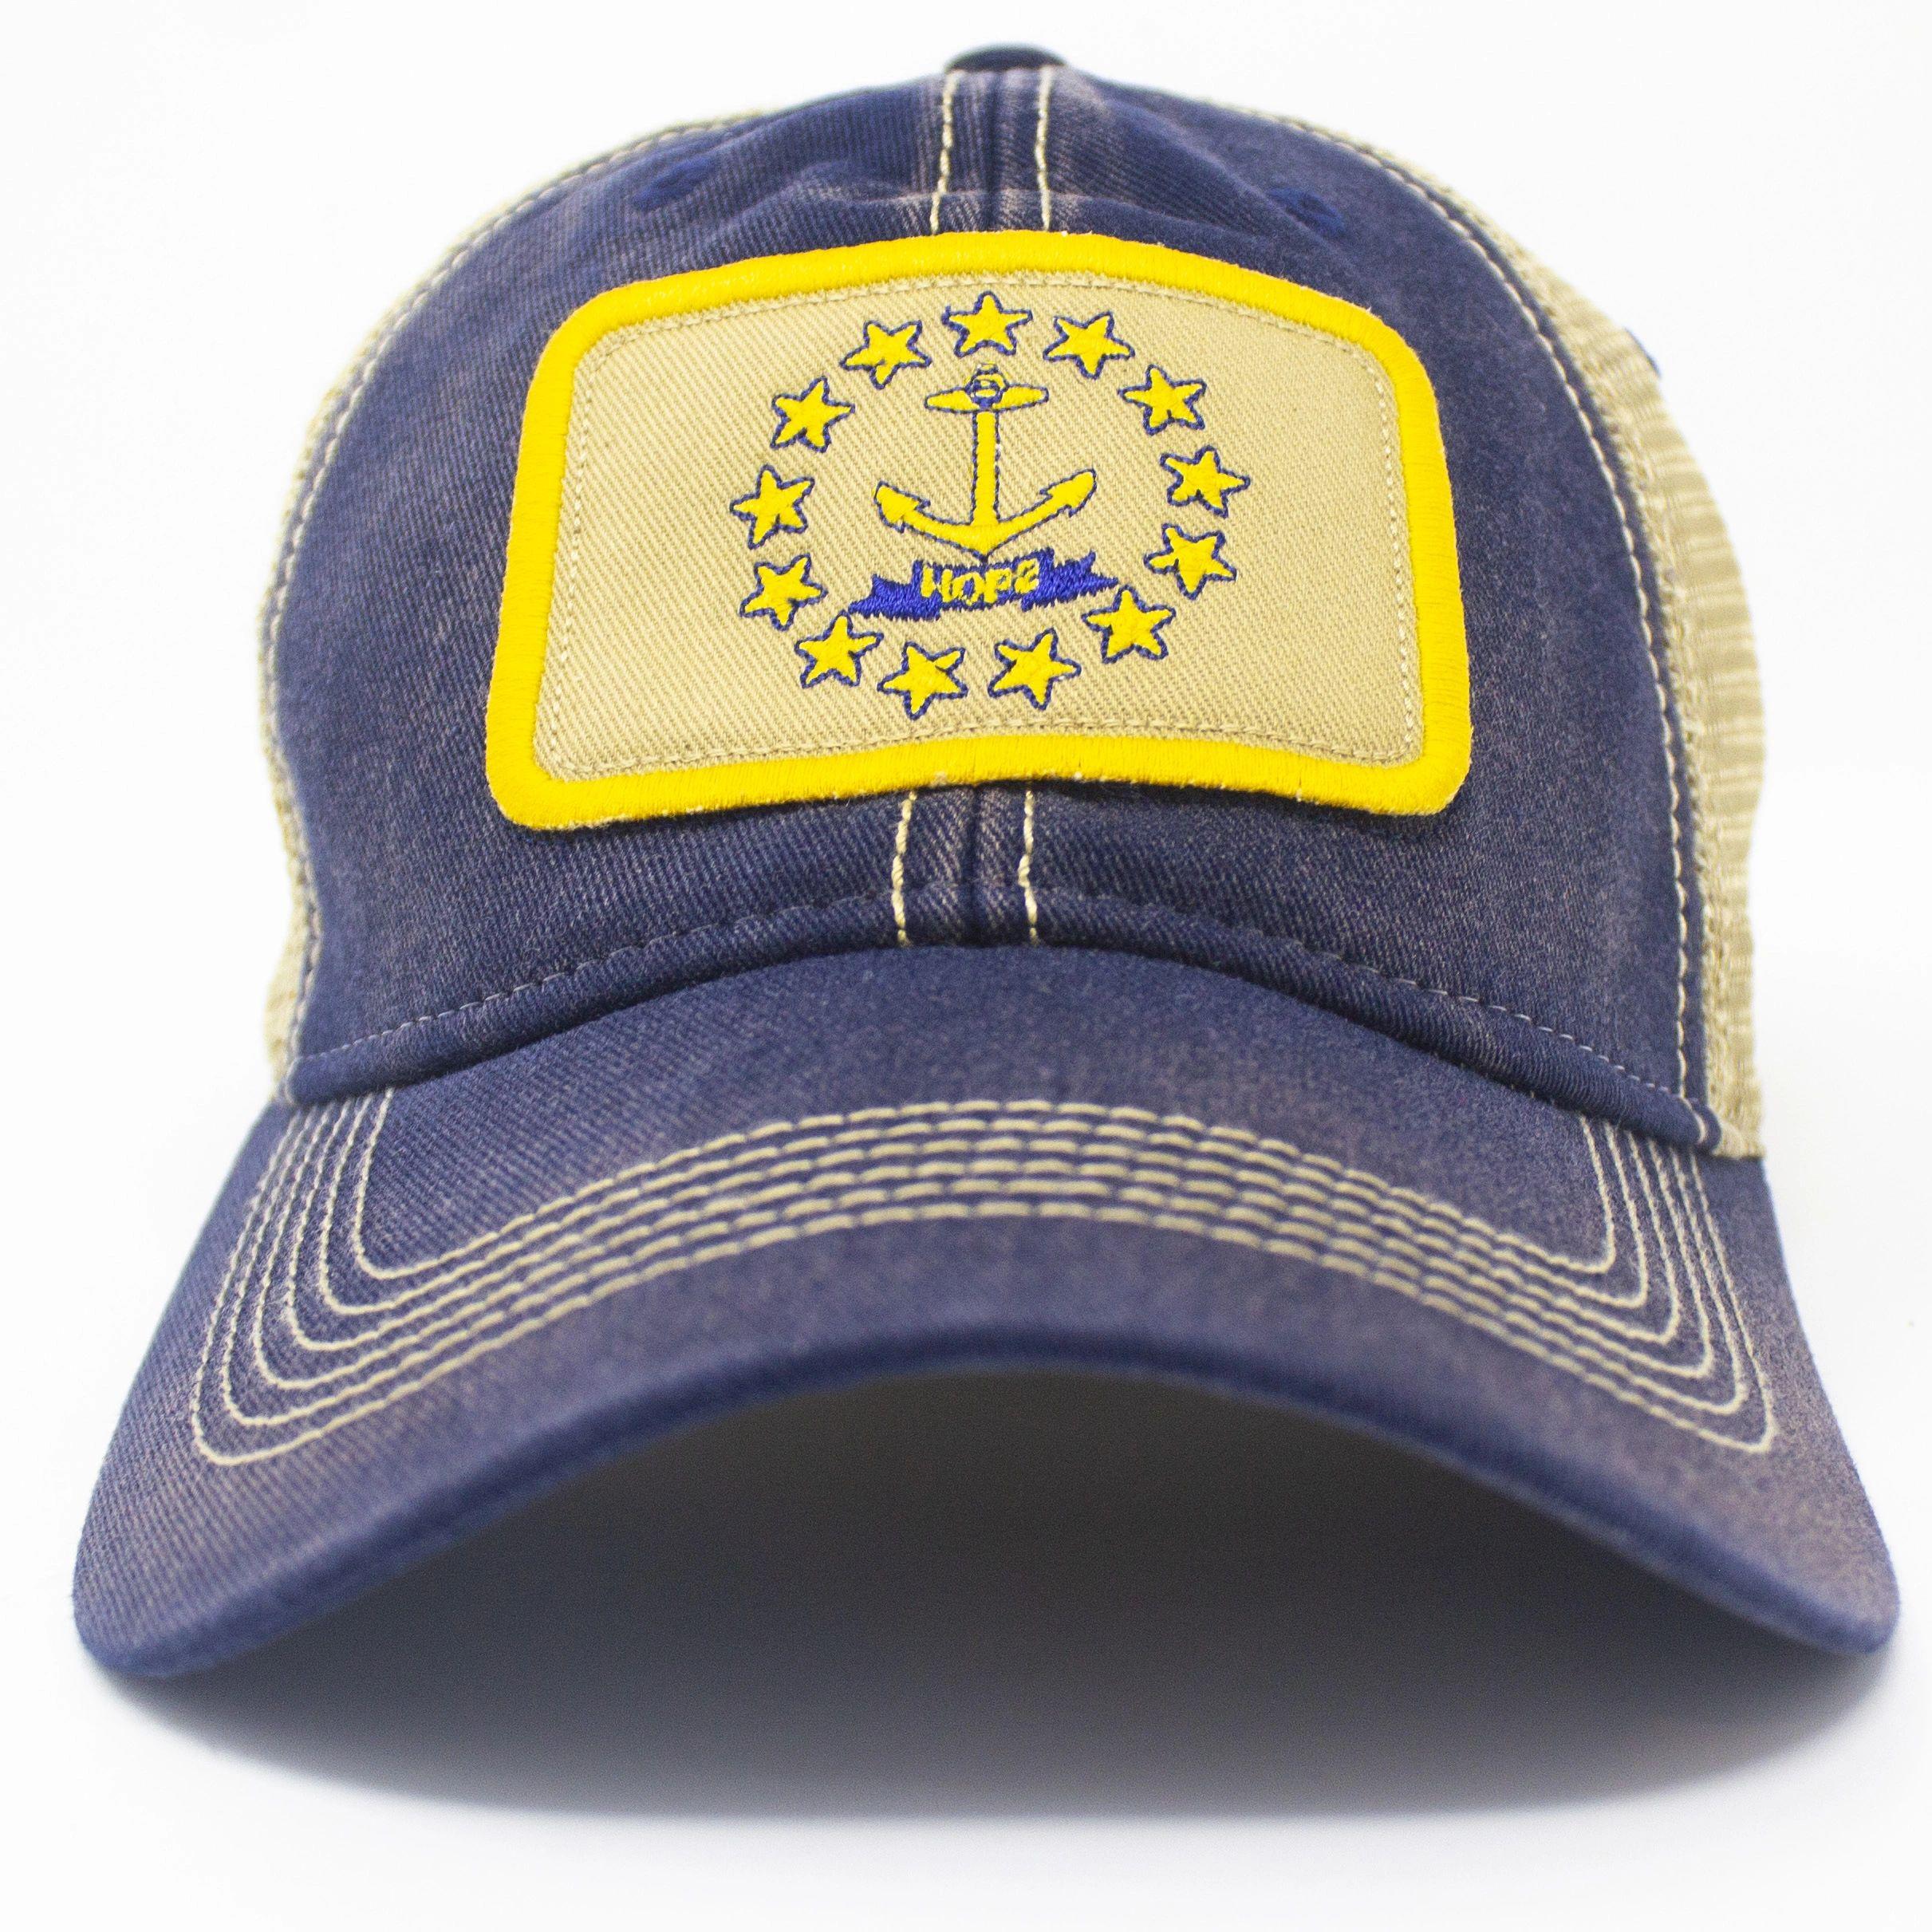 Rhode Island Flag Patch Trucker Hat, Navy